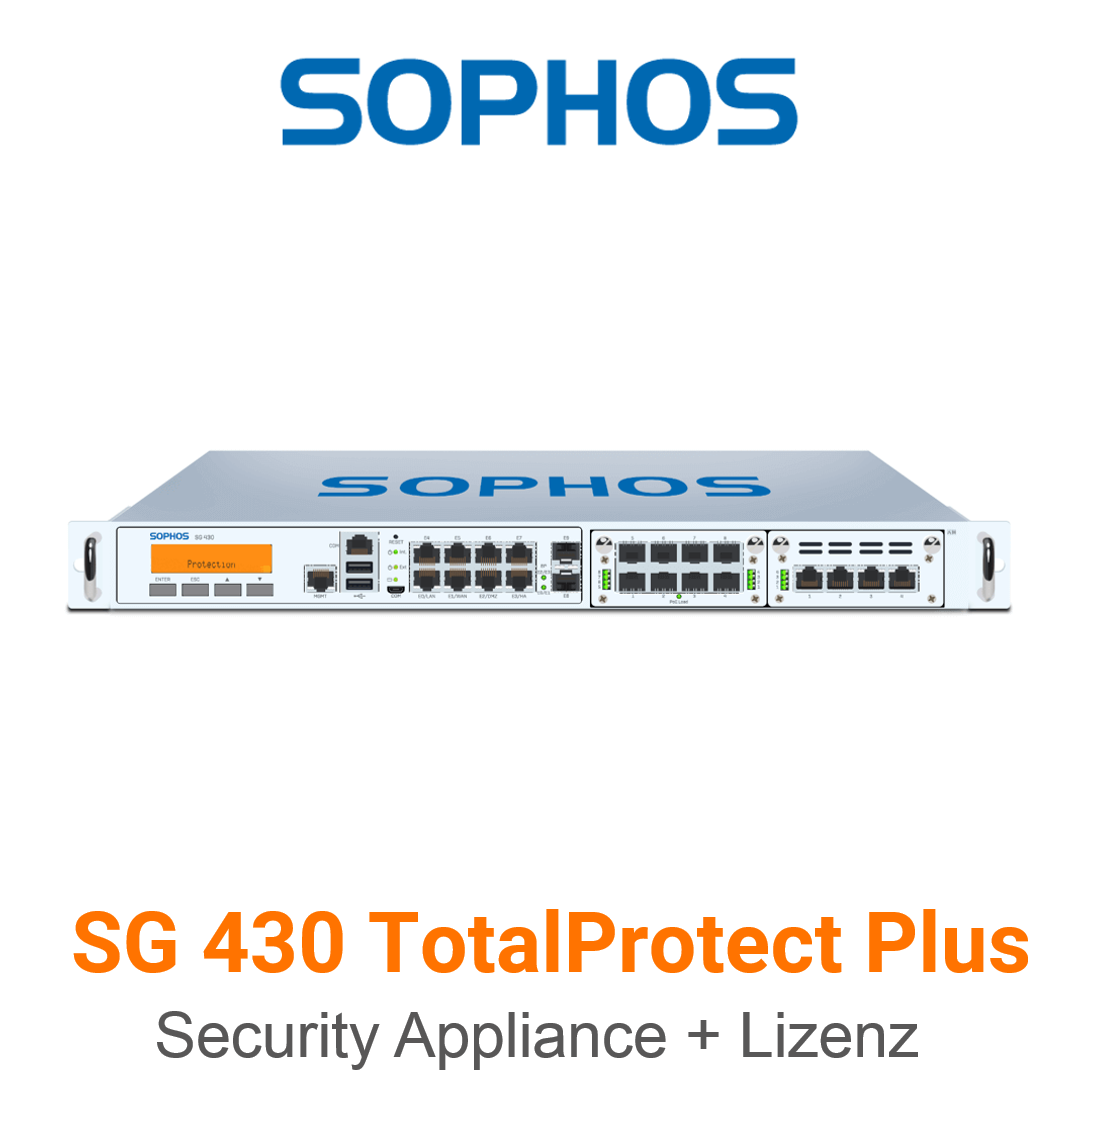 Sophos SG 430 TotalProtect Plus Bundle (Hardware + Lizenz)